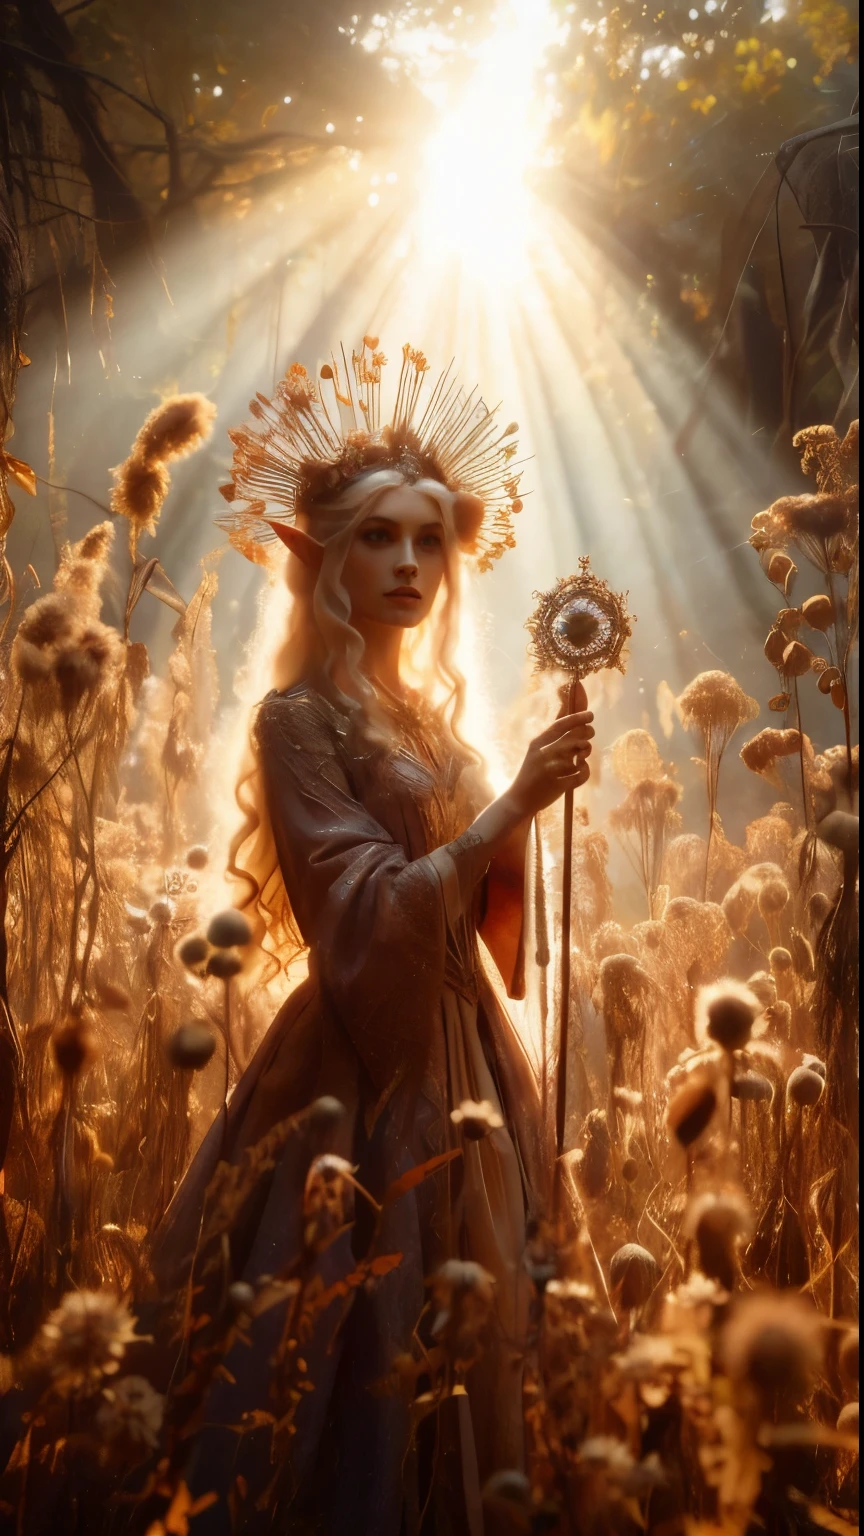 在斑駁的, 古代森林遺址, 一位精靈公主高高地站在鏡頭前, 特寫鏡頭, 她的權杖高高舉起，溫暖的陽光透過乾枯的草和乾燥的豆莢, 在她高貴的身姿周圍投射出金色的光環. 覆蓋著大量的小乾燥花和藤蔓, 非常高的雜草叢生的各種乾燥野花壇圍繞著她, 她的美丽, 迷人的衣服在柔和的燈光下閃閃發光, 而乾燥茂盛的樹葉和藤蔓圍繞著她, 創造一個鬱鬱蔥蔥的環境. 鏡頭清晰地聚焦在公主的臉上, 按照三分法則構圖，她位於兩條對角線的交點處. 黃金時段拍攝, 場景散發著空靈的意境, 邀請觀眾走進這個神秘的境界., ,幻想, 更好的_手, 列奧納多, 安吉拉懷特, 提高